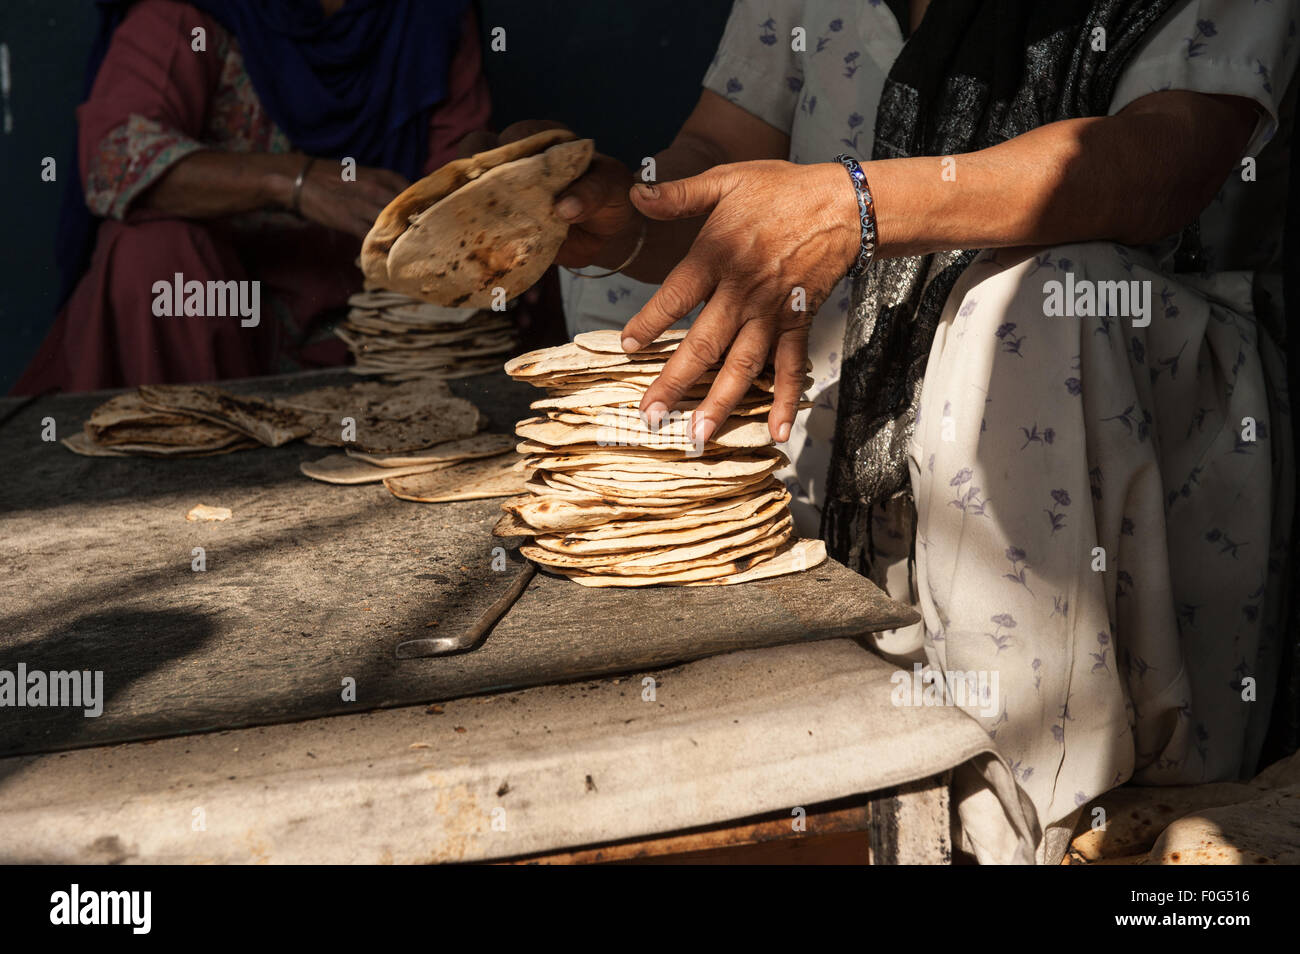 Amritsar, Punjab, Indien. Sri Harmandir Sahib goldenen Tempel. Eine Frau stapelt Roti-Fladen in der freien Küche - Langar - die Zehntausende von Menschen jeden Tag füttert. Stockfoto